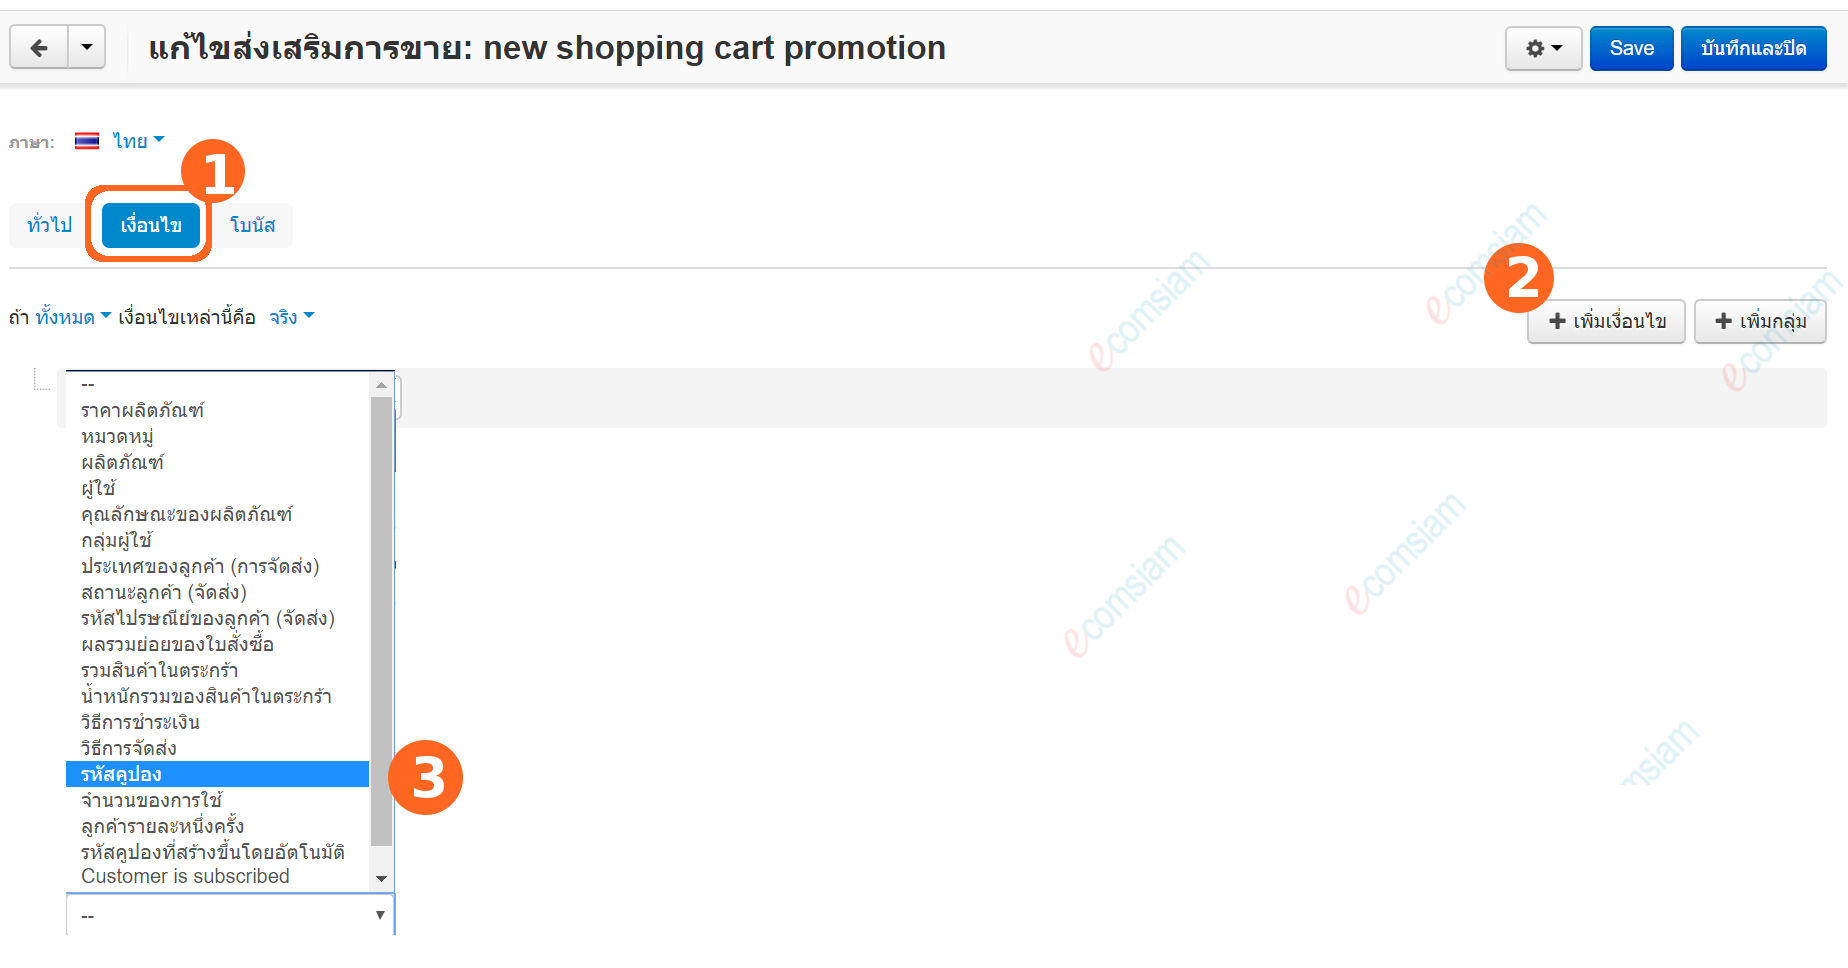 เว็บไซต์สำเร็จรูปไทย - คู่มือร้านออนไลน์ - การจัดการร้านออนไลน์ - สร้างเว็บไซต์ - การตลาด โปรโมชั่น promotion สร้างคูปอง create coupon